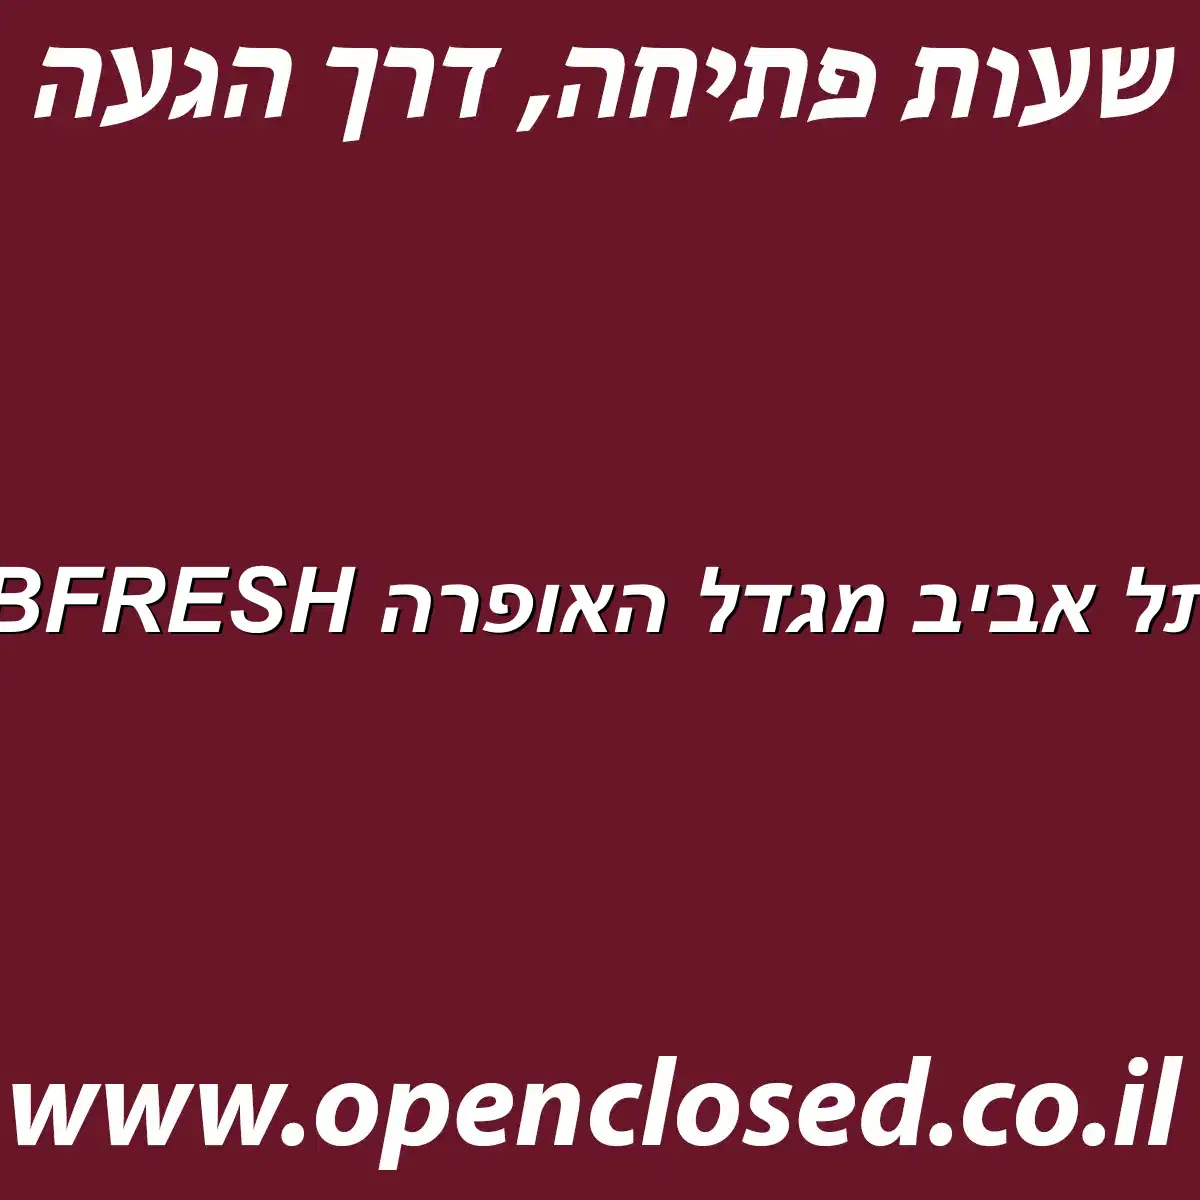 BFRESH תל אביב מגדל האופרה